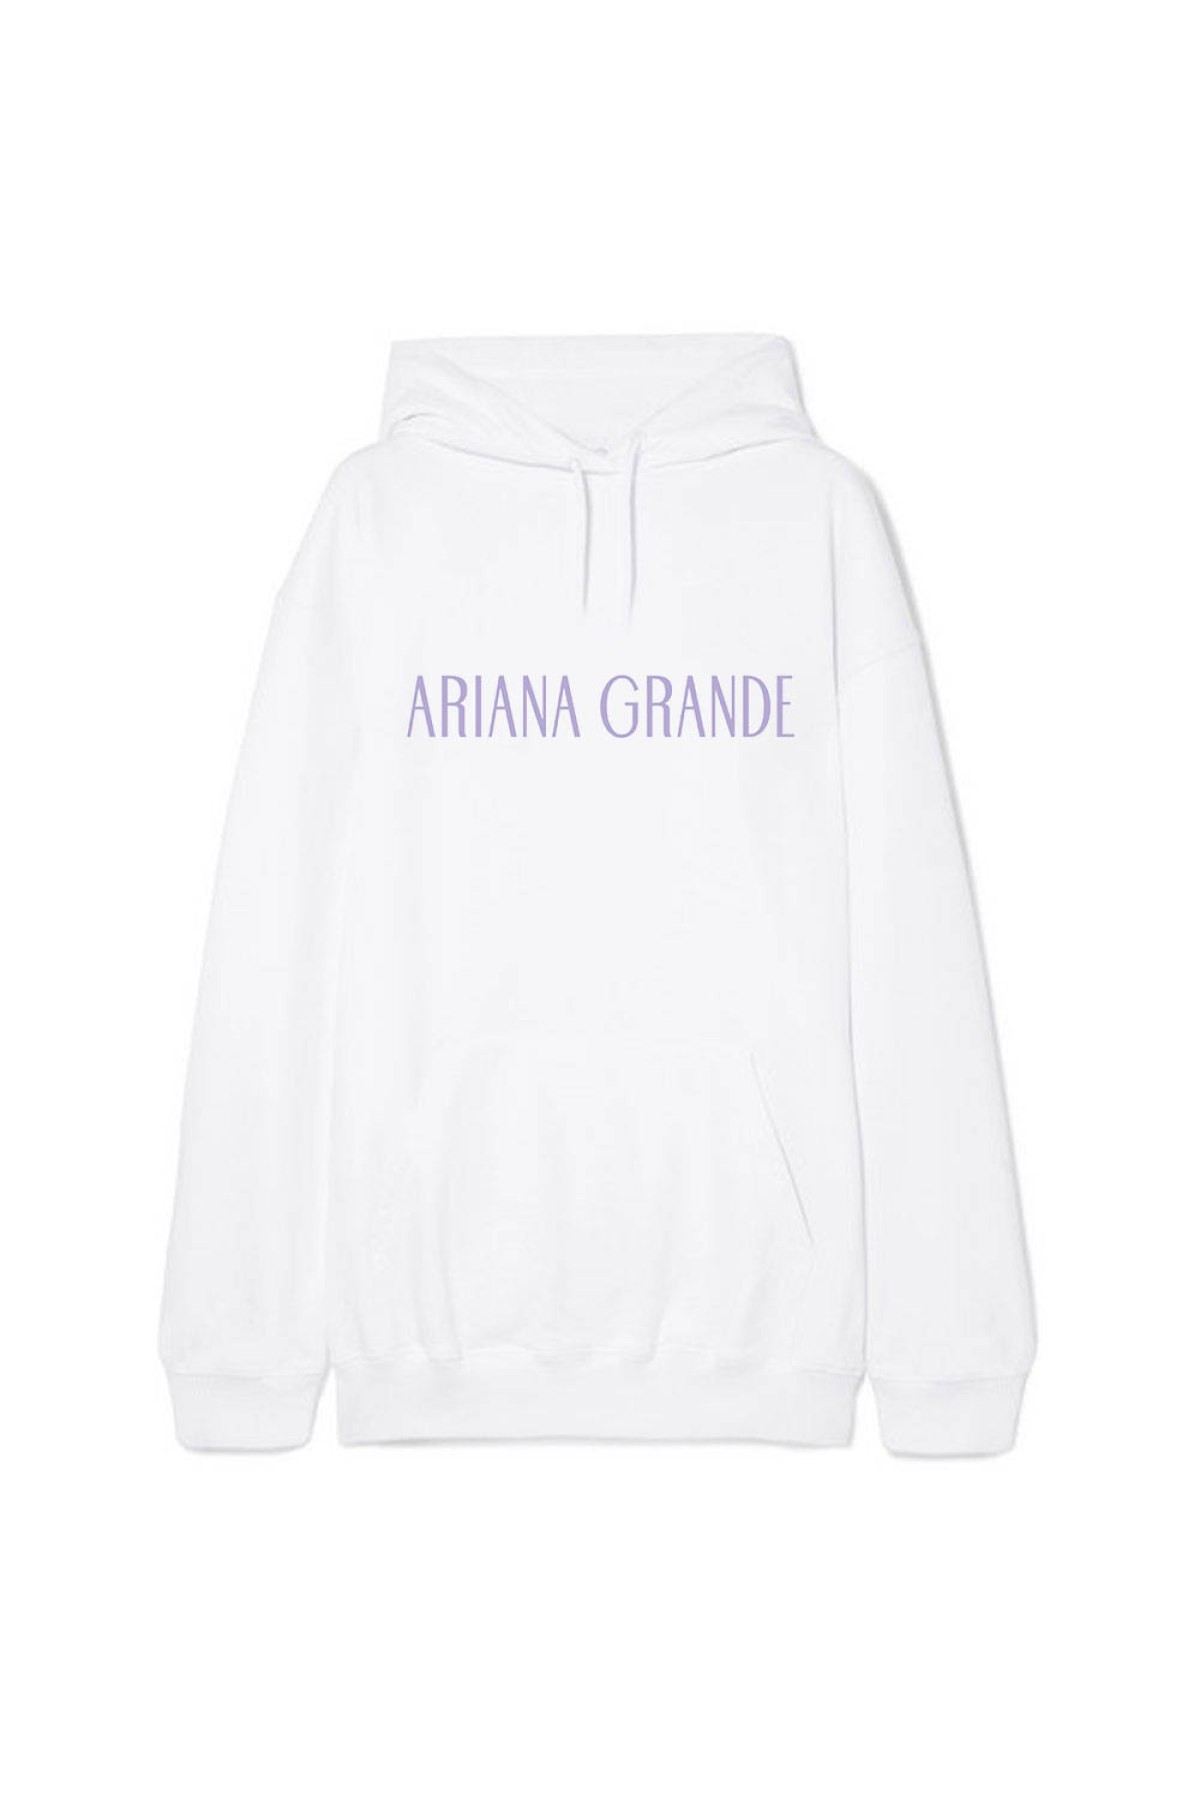 Ariana Grande Name Beyaz Kapşonlu Sweatshirt